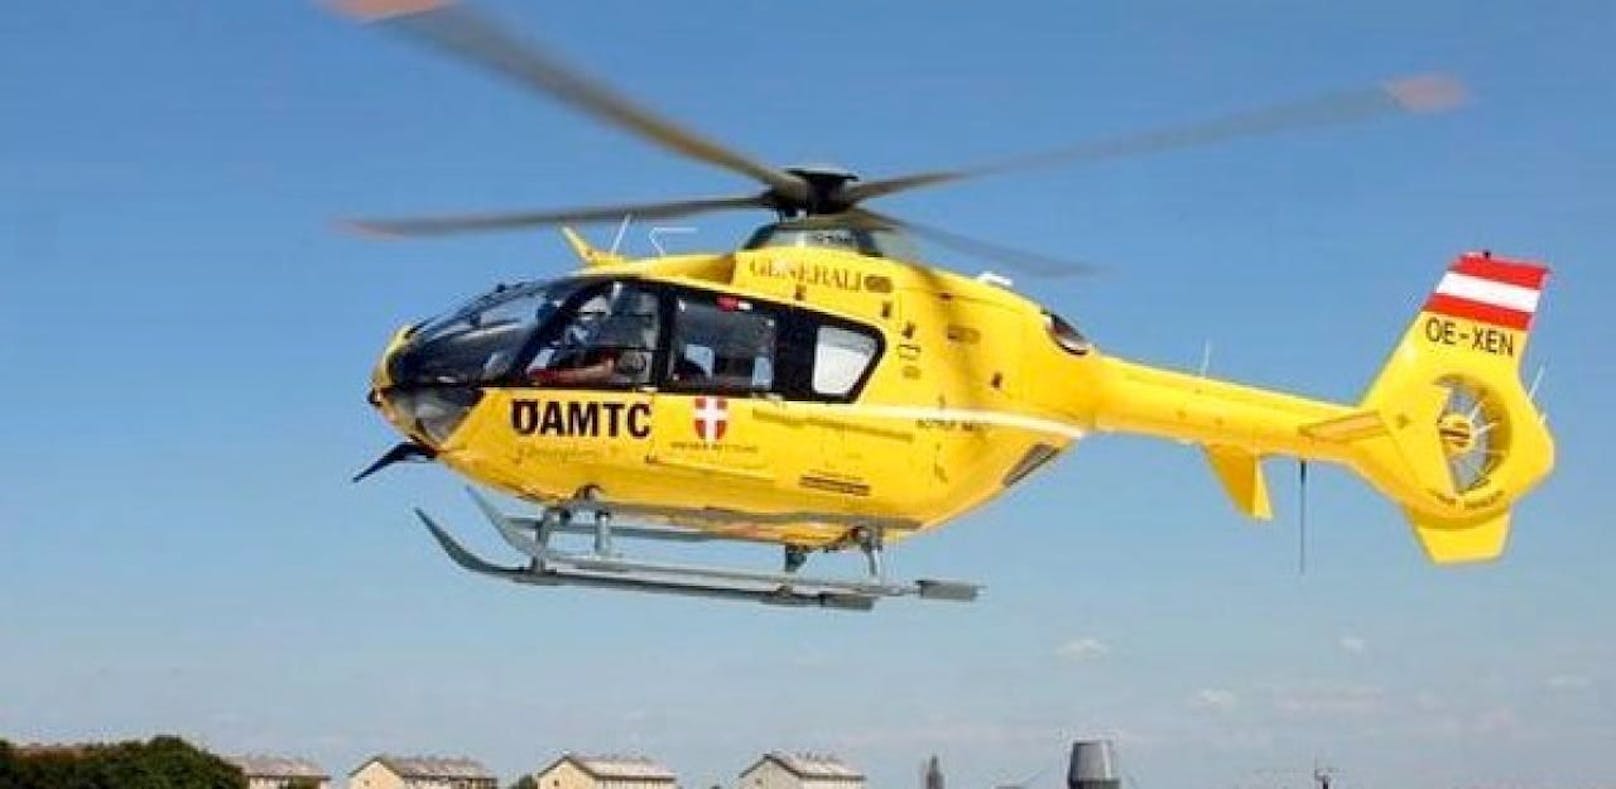 Mäderl (1) fast erstickt: Per Helikopter ins Spital